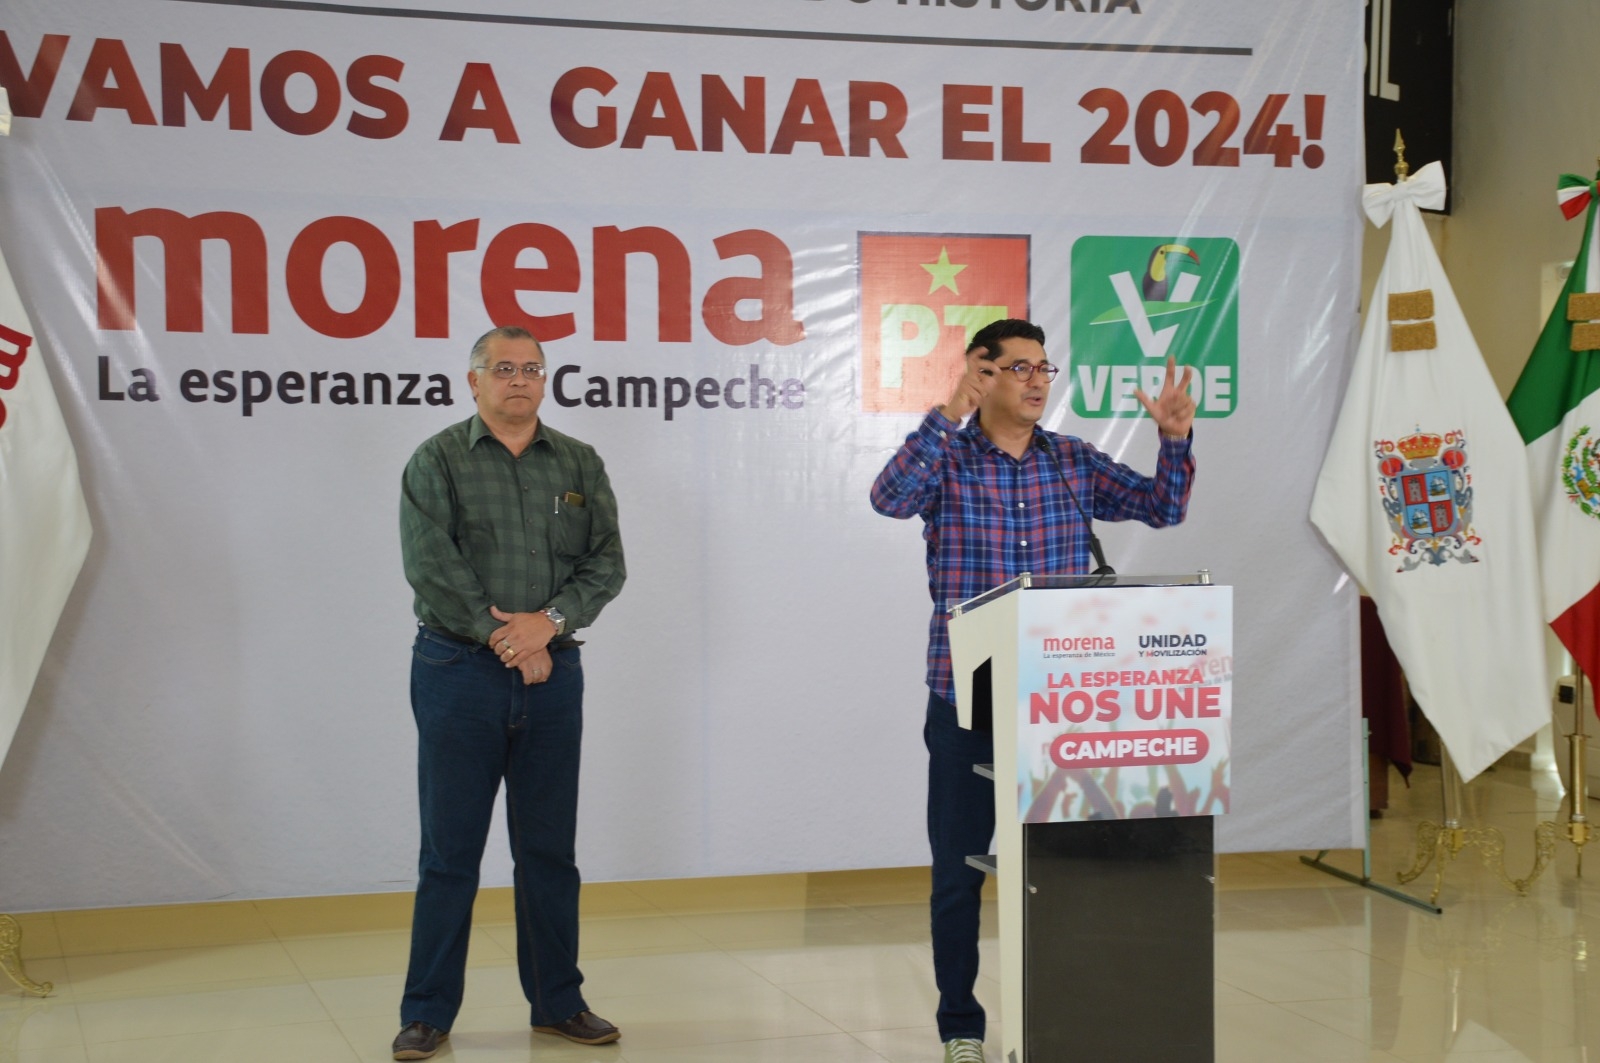 Los mejores posicionados en la encuesta serán los candidatos de Morena en Campeche